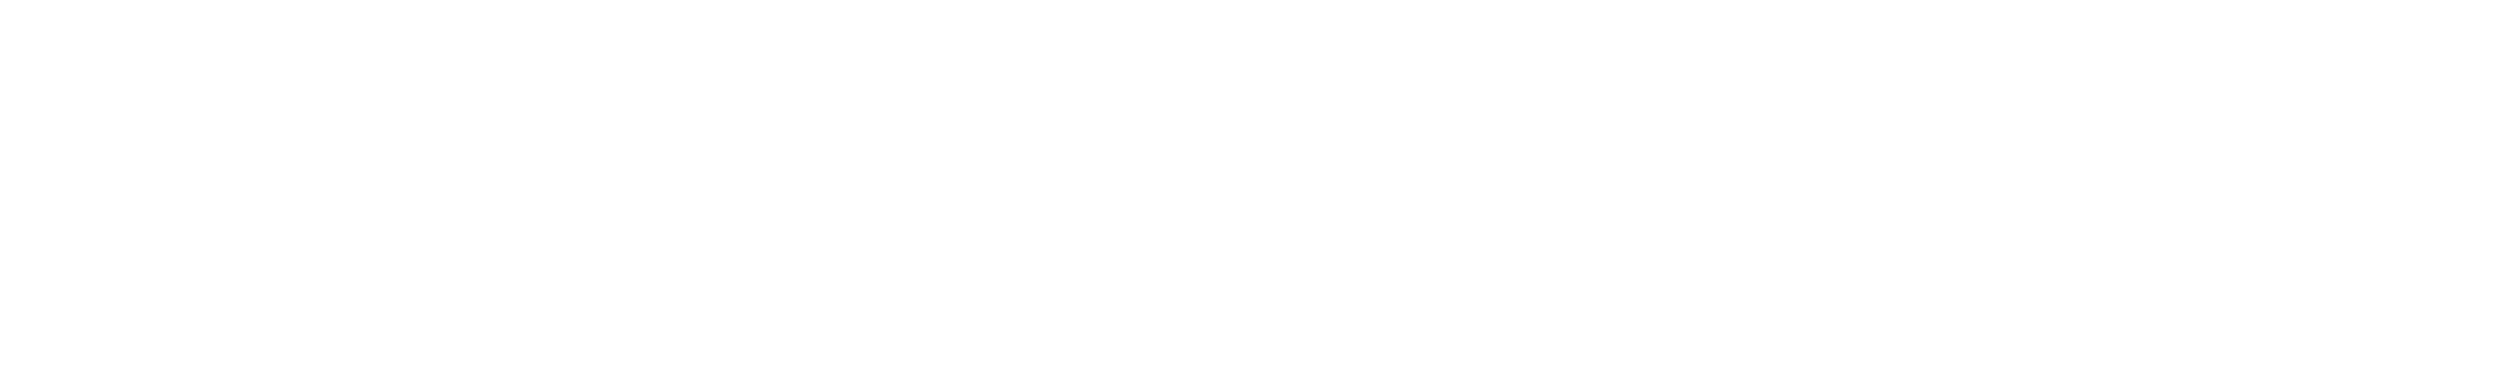 Lockheed_Martin_logo